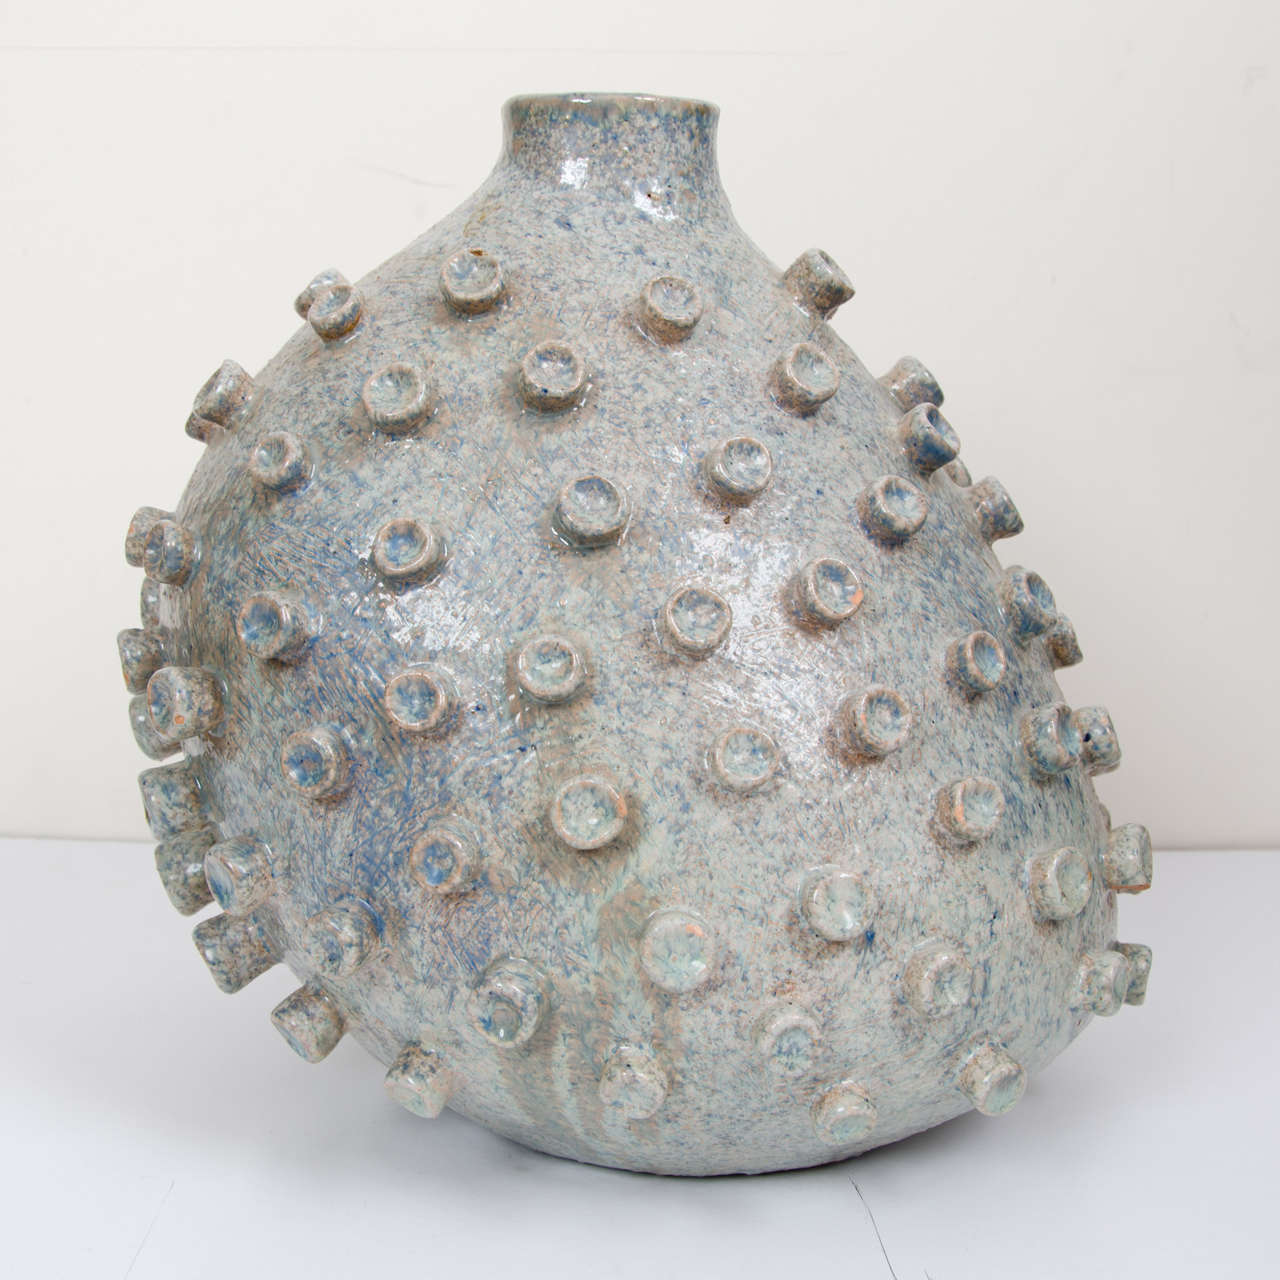 Biomorphic Ceramic Vessel 2